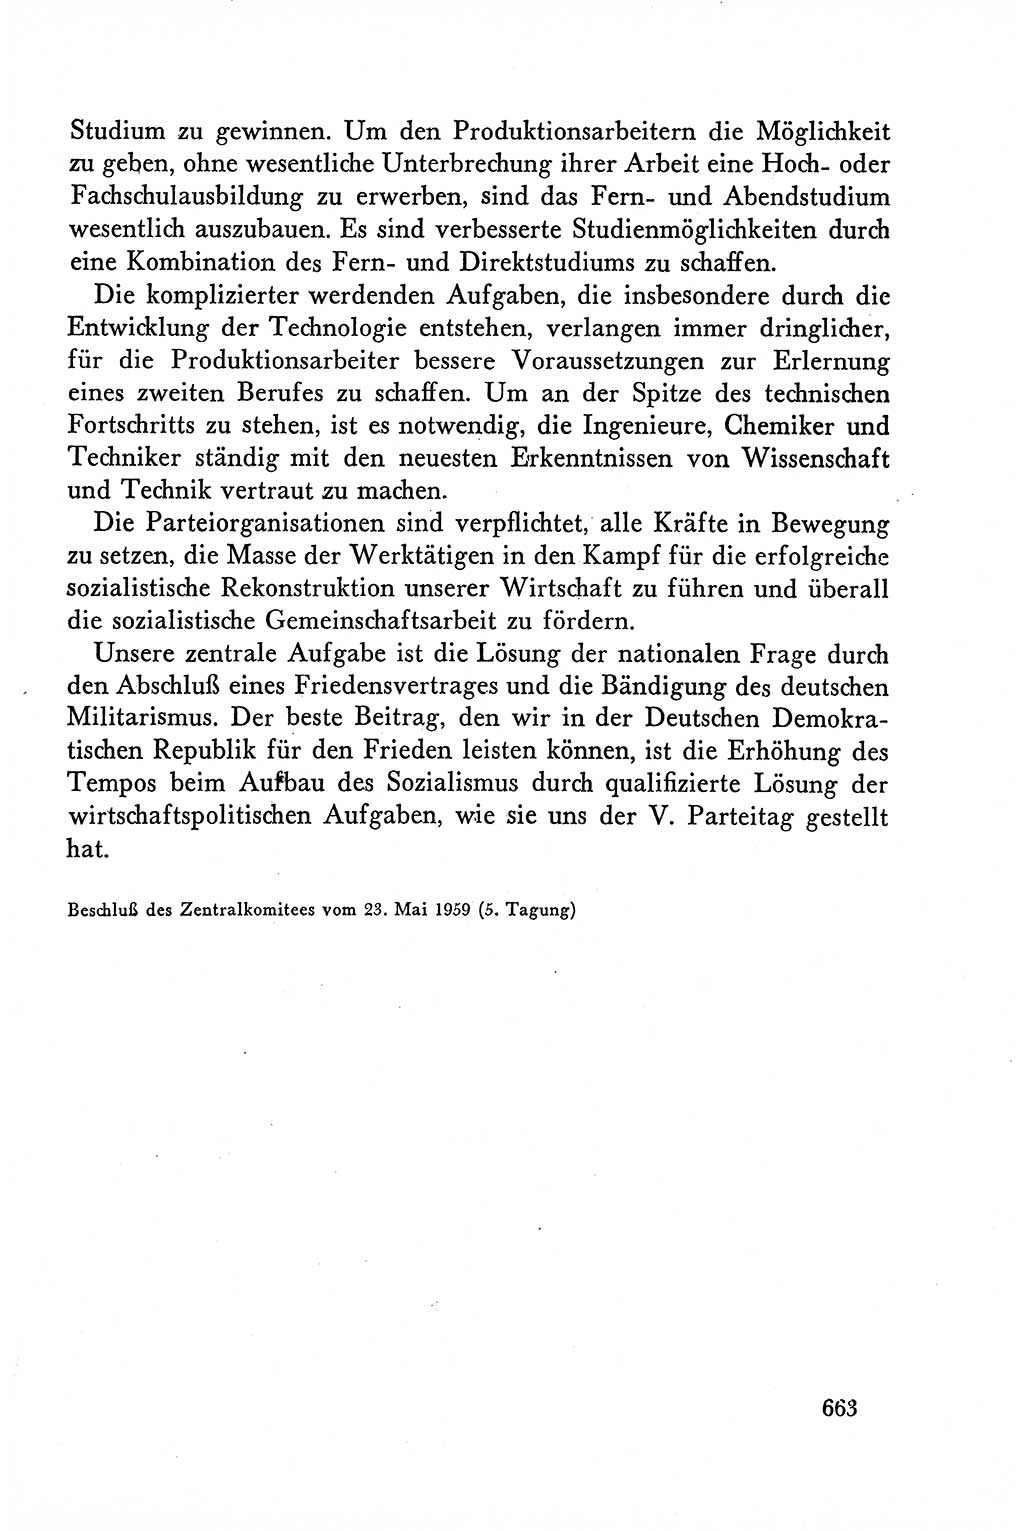 Dokumente der Sozialistischen Einheitspartei Deutschlands (SED) [Deutsche Demokratische Republik (DDR)] 1958-1959, Seite 663 (Dok. SED DDR 1958-1959, S. 663)